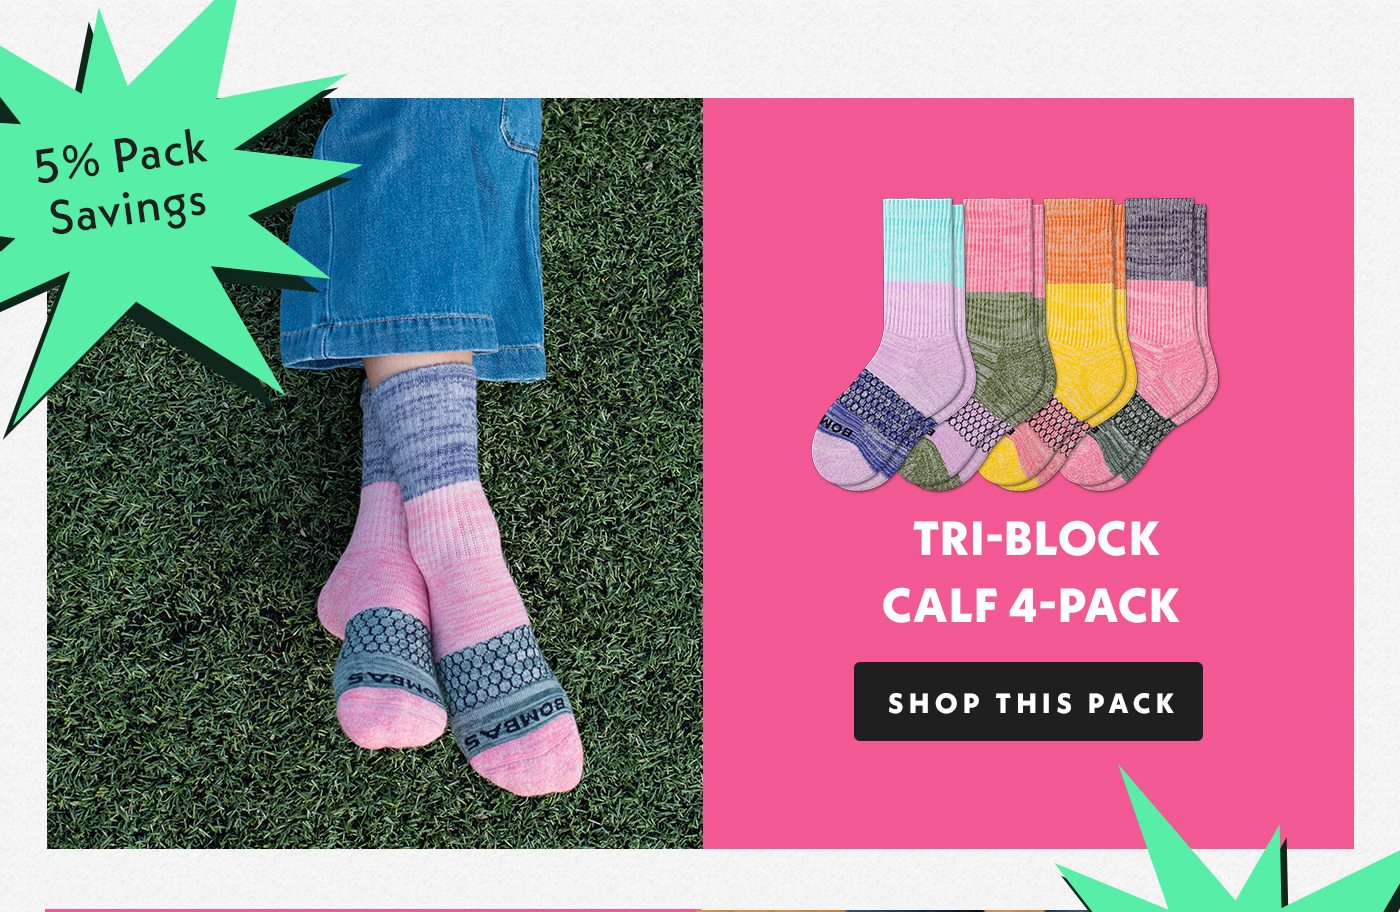 Tri Block Calf 4 Pack. Shop this pack.